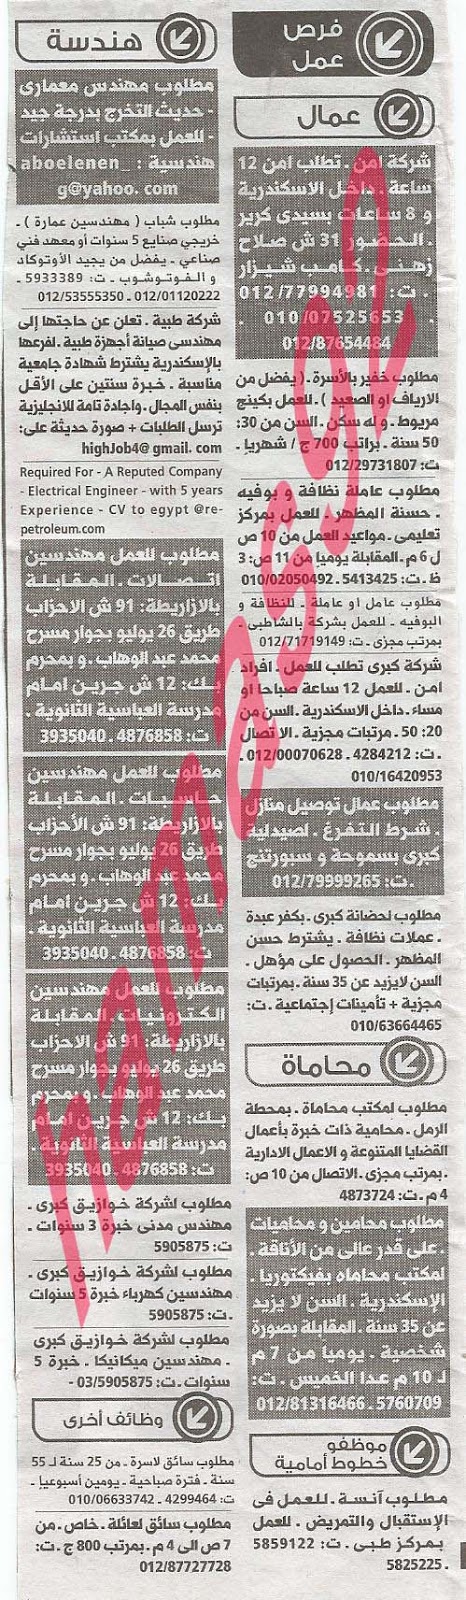 وظائف خالية فى جريدة الوسيط الاسكندرية الجمعة 06-09-2013 %D9%88+%D8%B3+%D8%B3+2